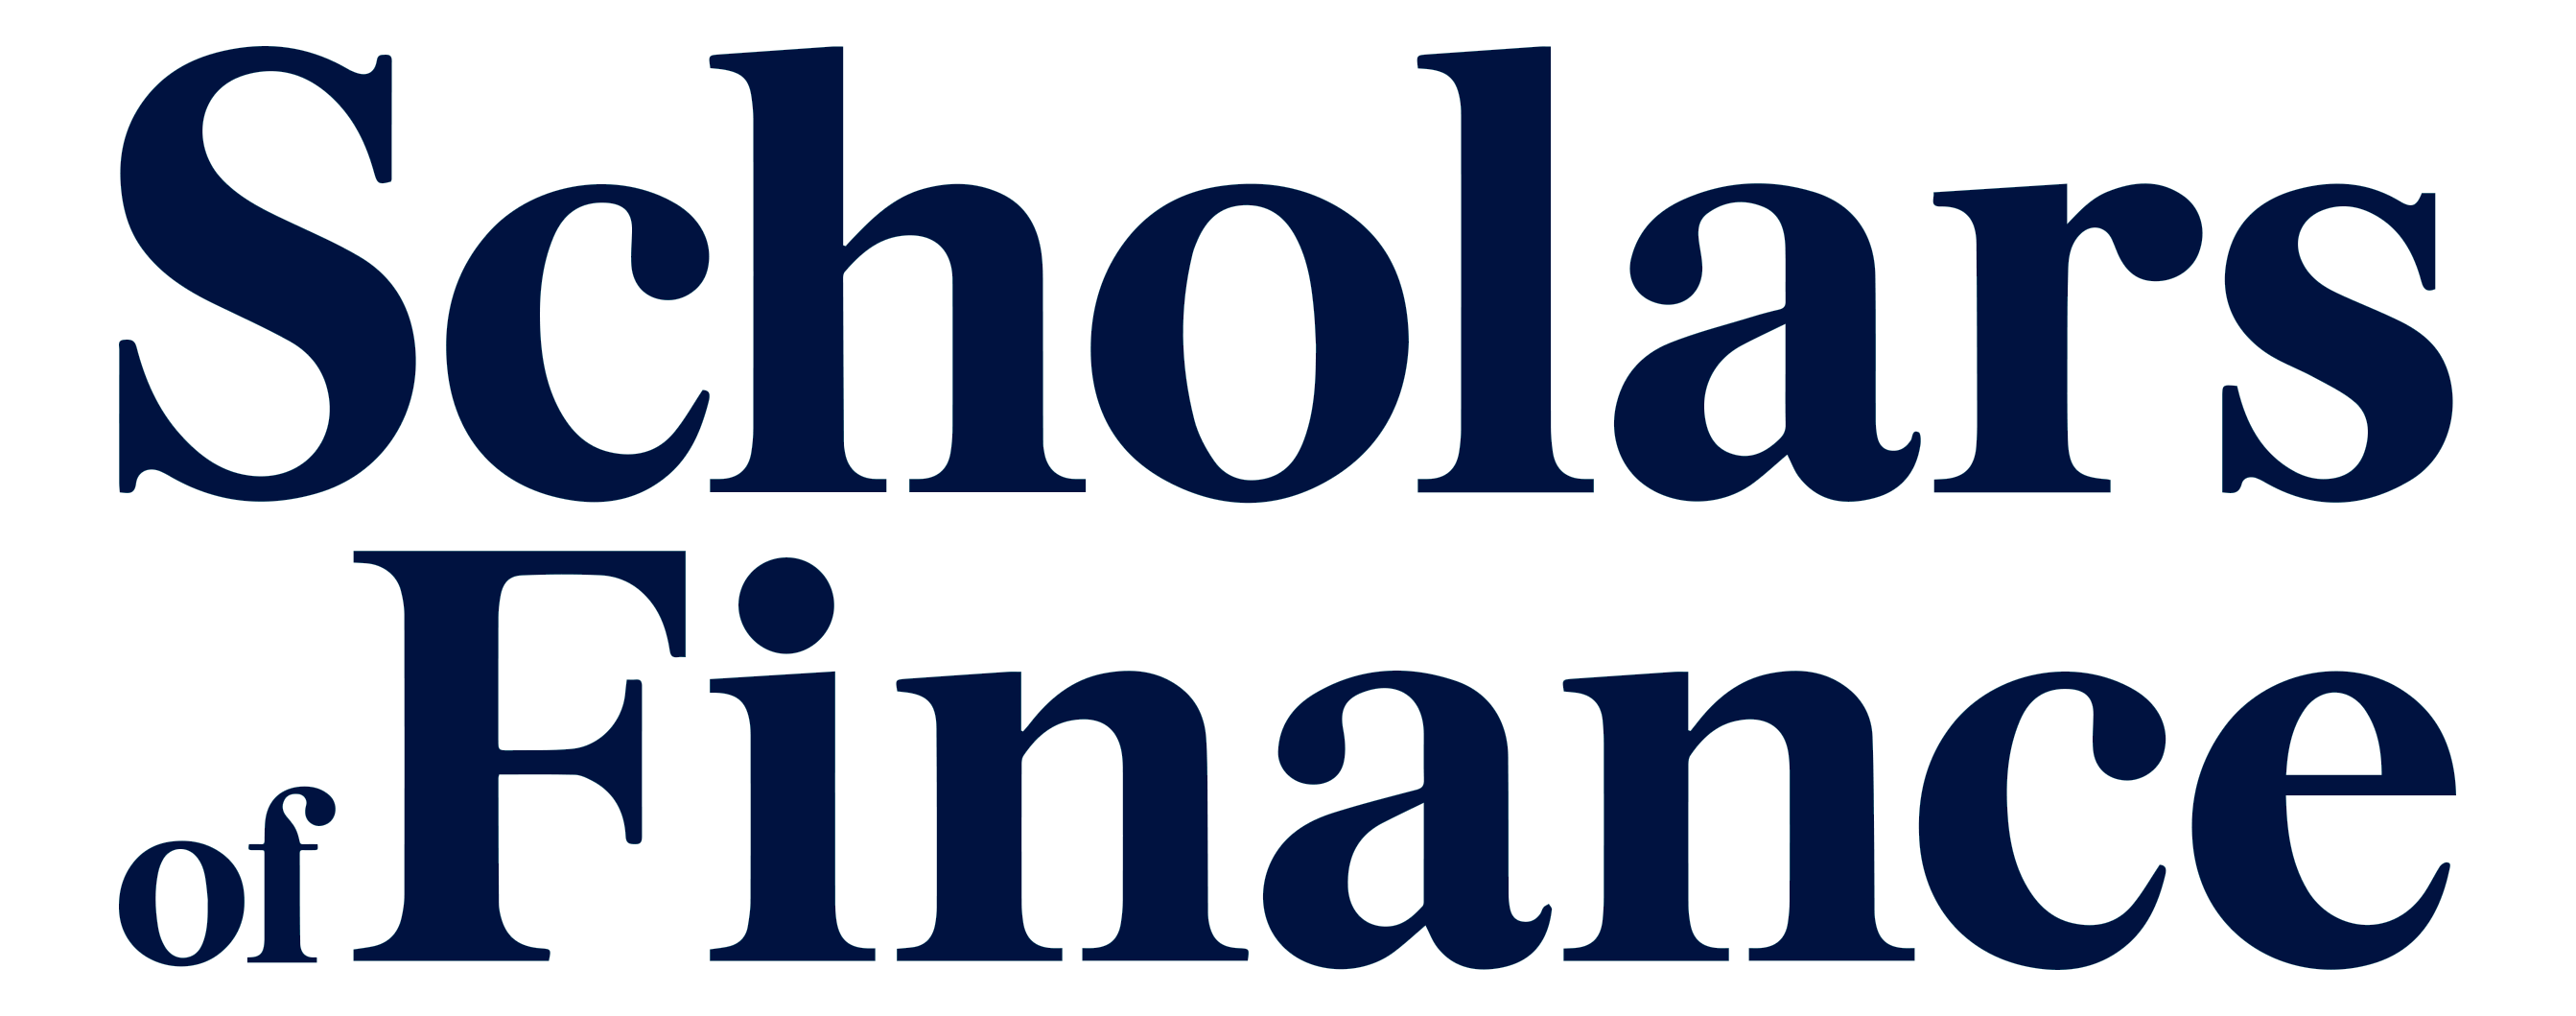 Scholars of Finance